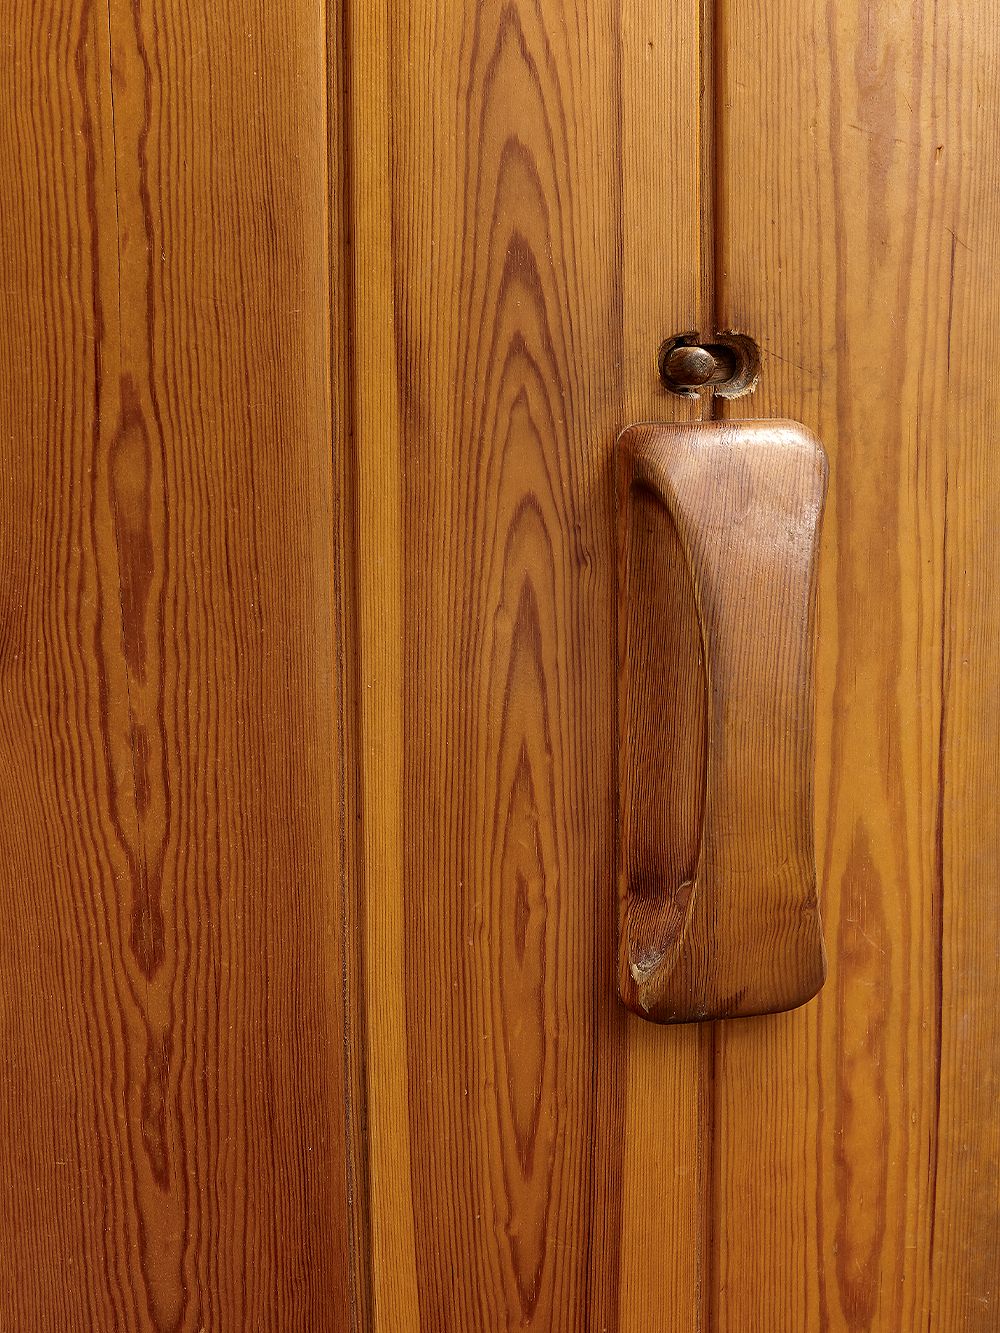 Detail of a wooden sauna door handle.